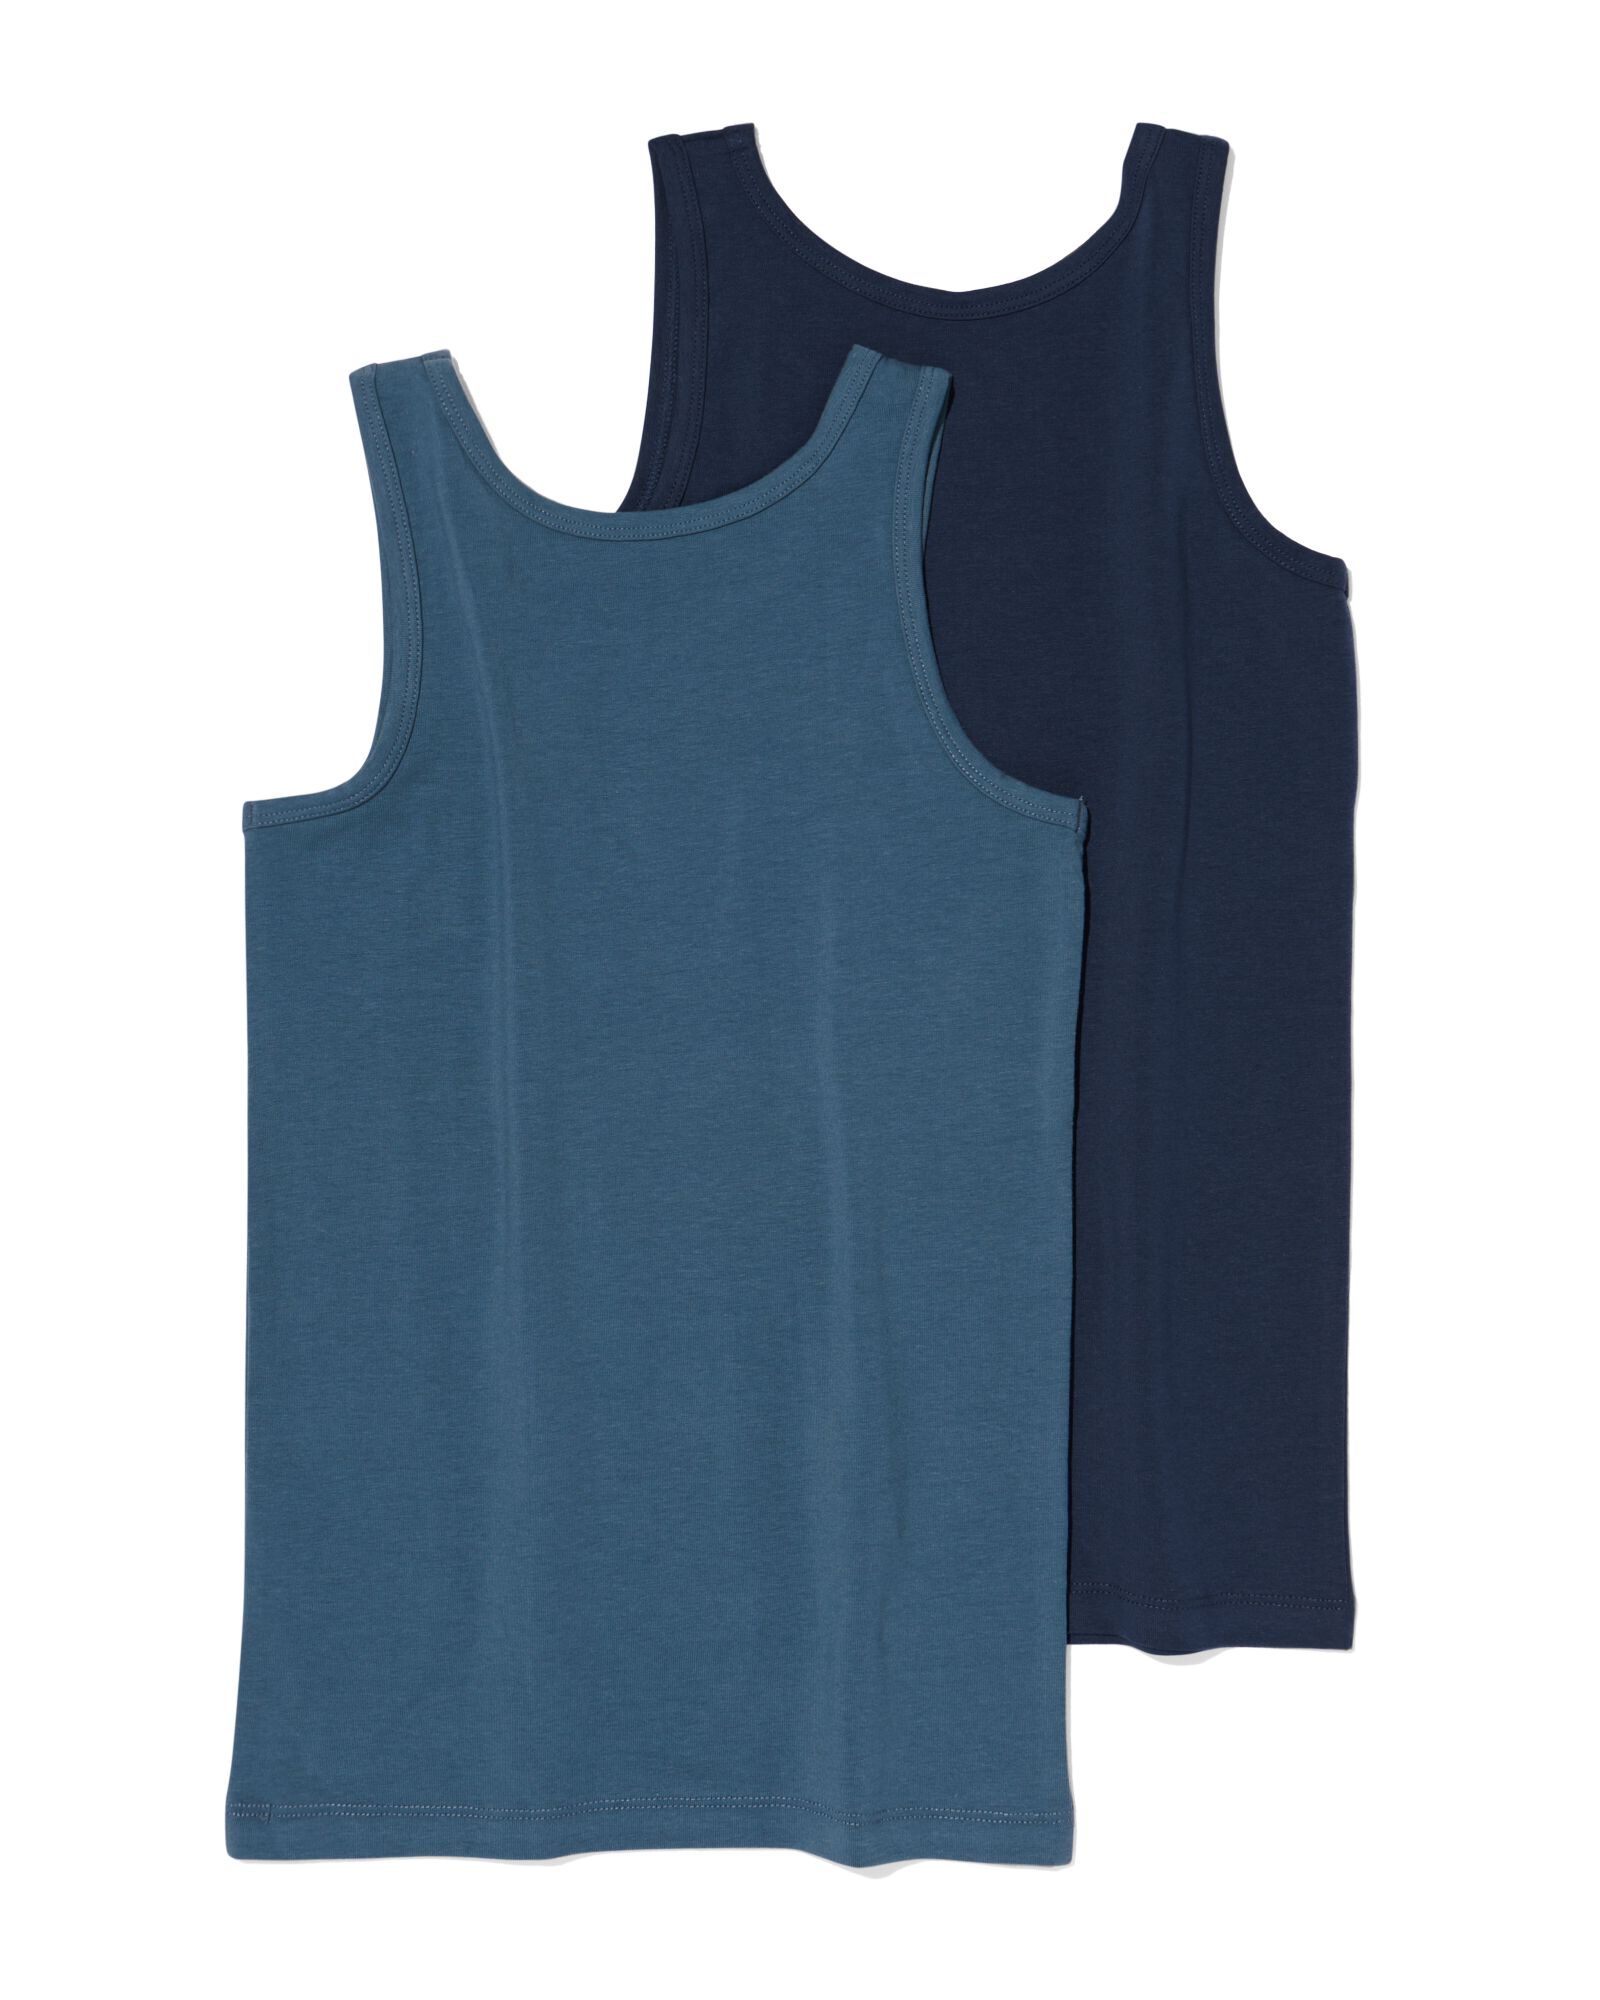 kinder hemden basic stretch katoen - 2 stuks blauw blauw - 19280790BLUE - HEMA